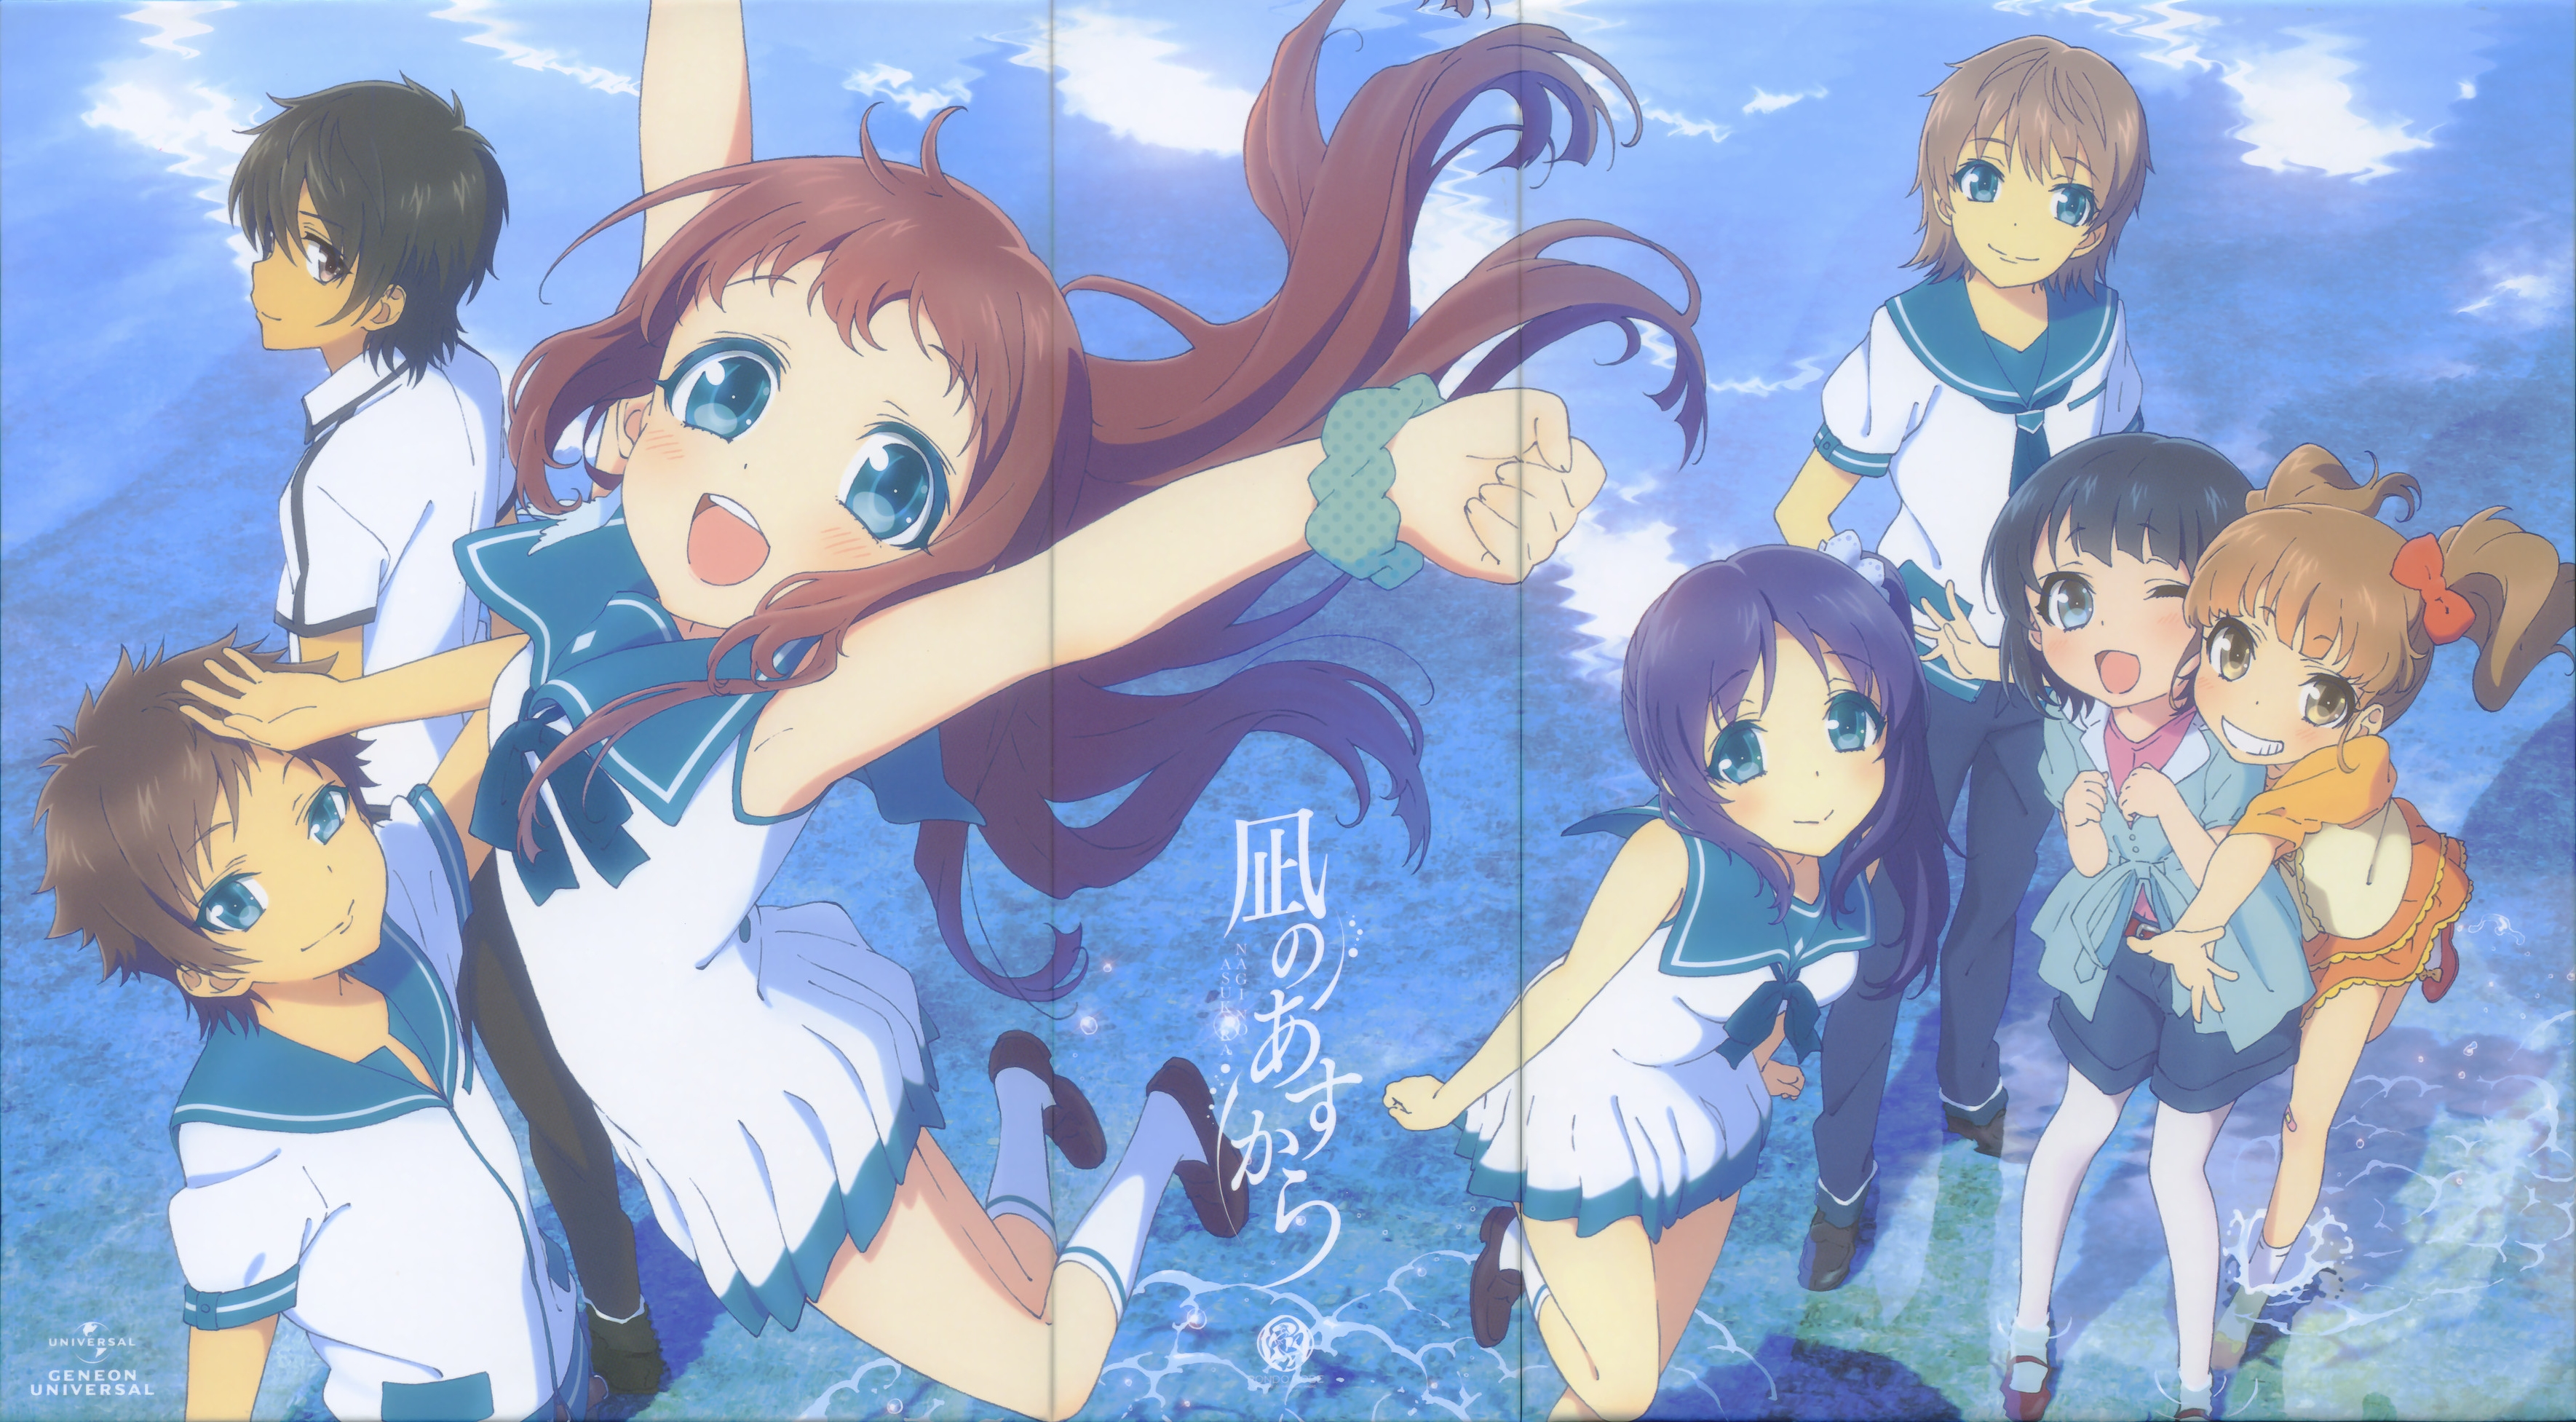 Nagi no Asukara Anime Fabric Wall Scroll Poster (16x22) Inches. [WP] Nagi  no Asukara-1